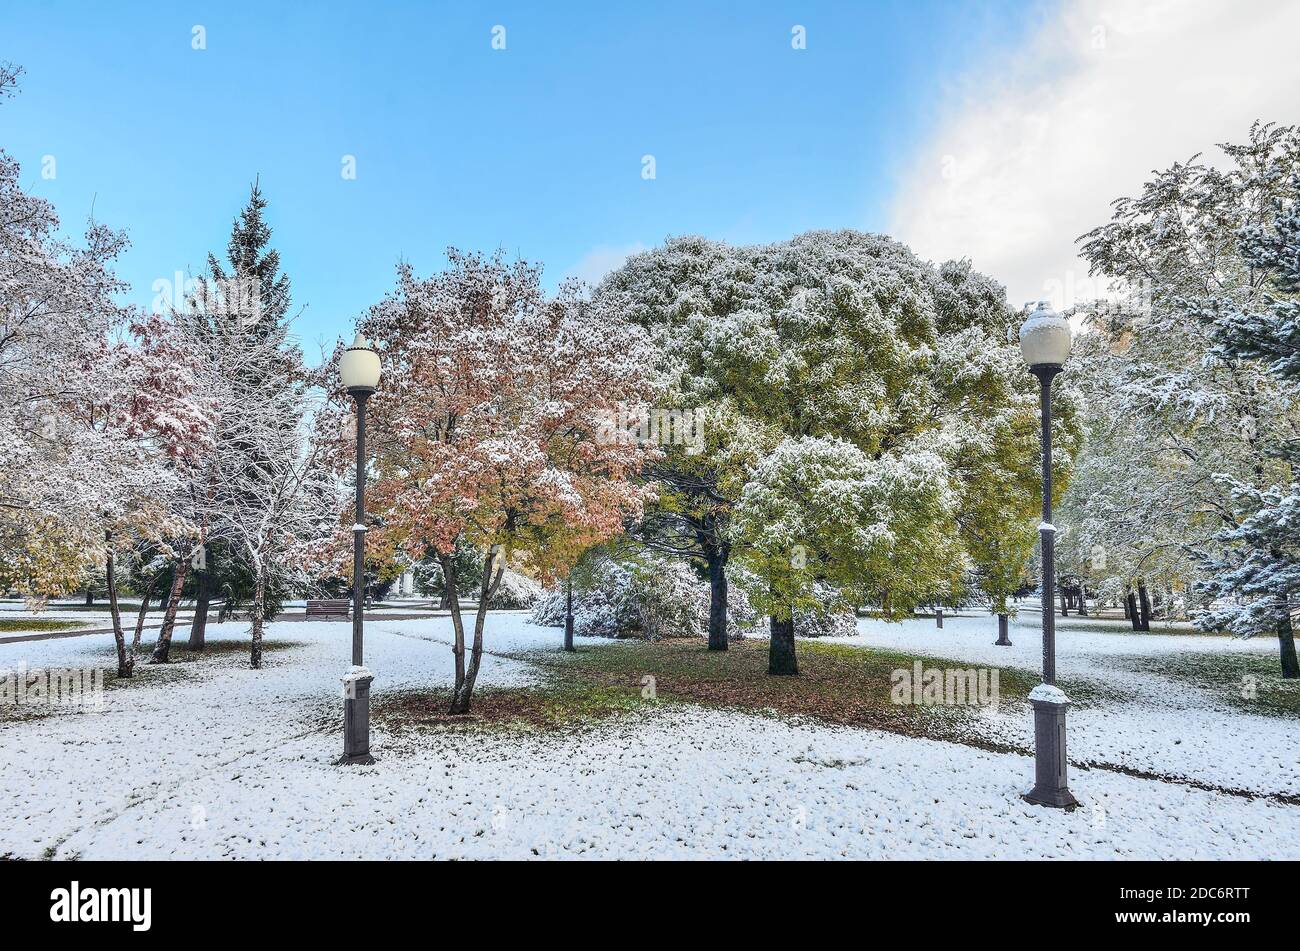 Première chute de neige dans le parc de la ville d'automne coloré. Neige blanche et moelleuse couverte de feuillage doré, rouge, vert et buissons. Changement de saison - conte de fées de Banque D'Images